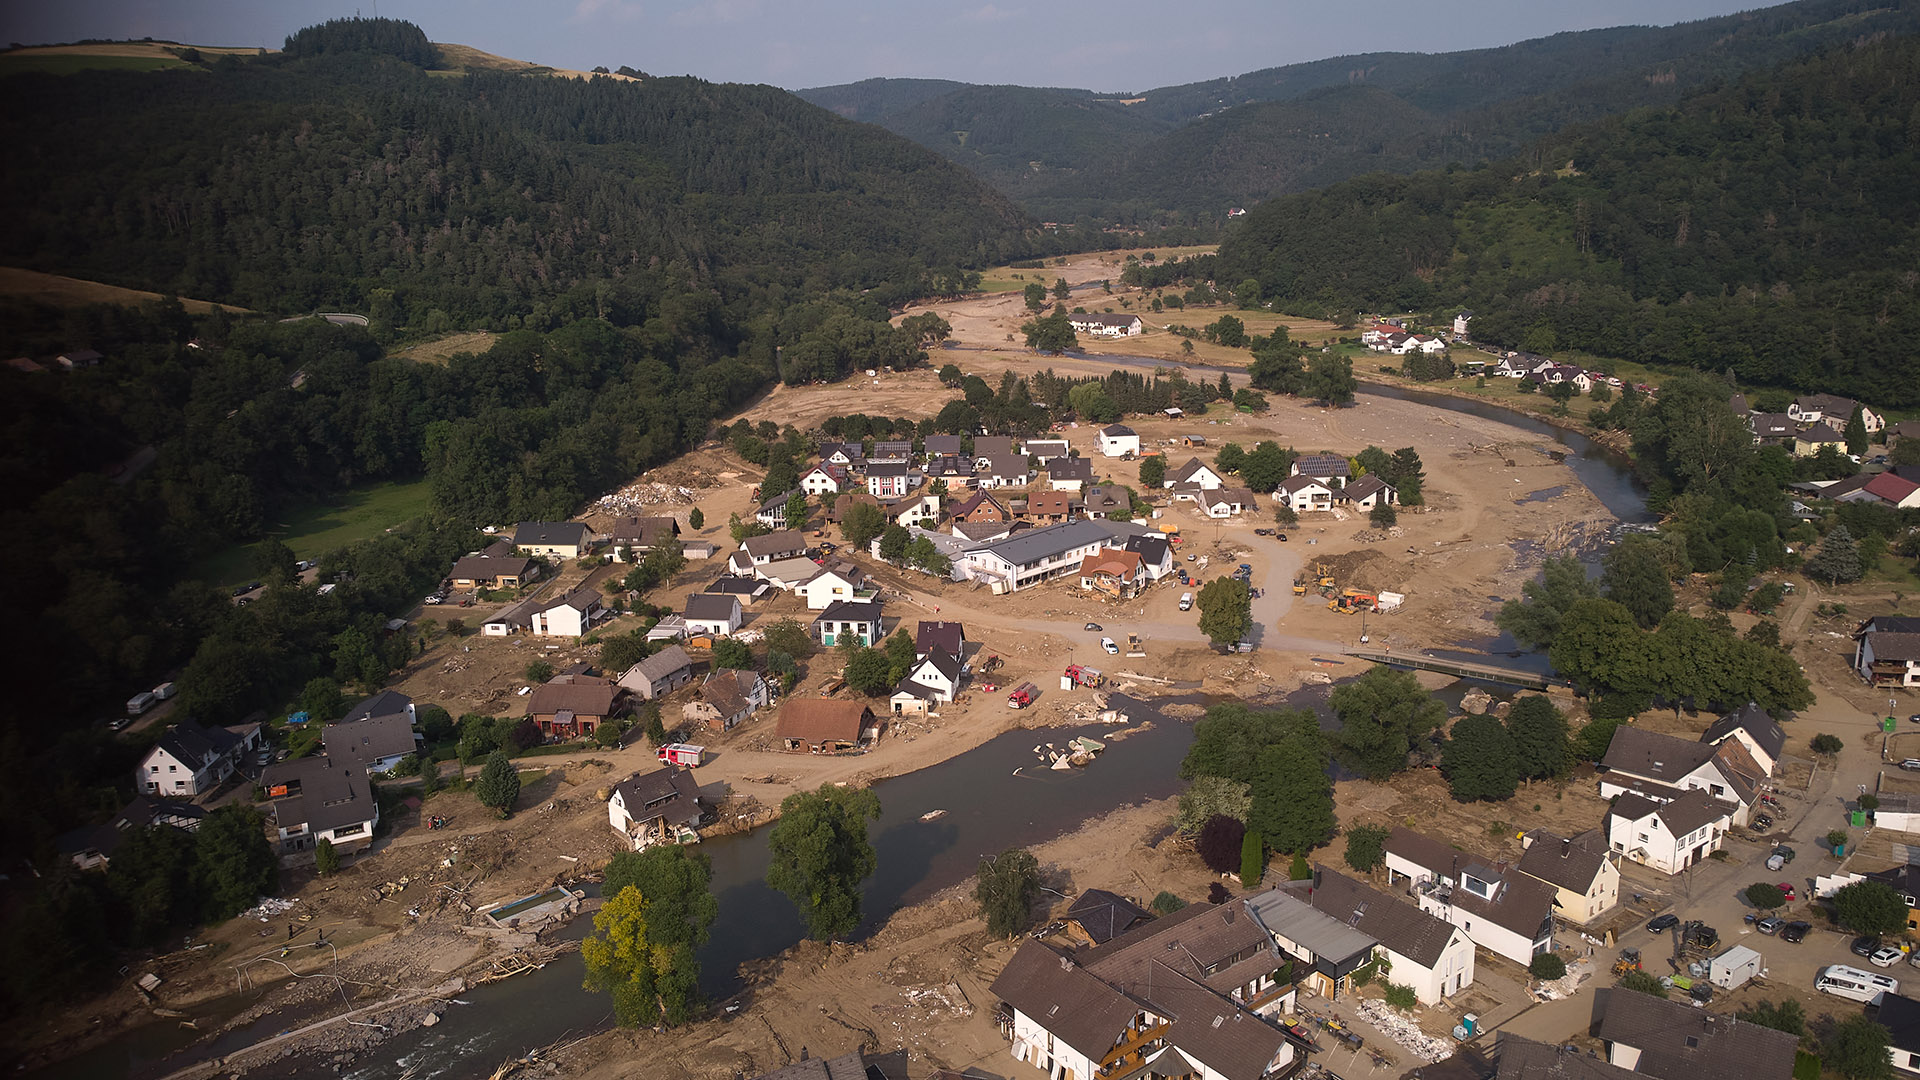 Hochwasser im Ahrtal: Warum kam die Warnung so spät? | tagesschau.de